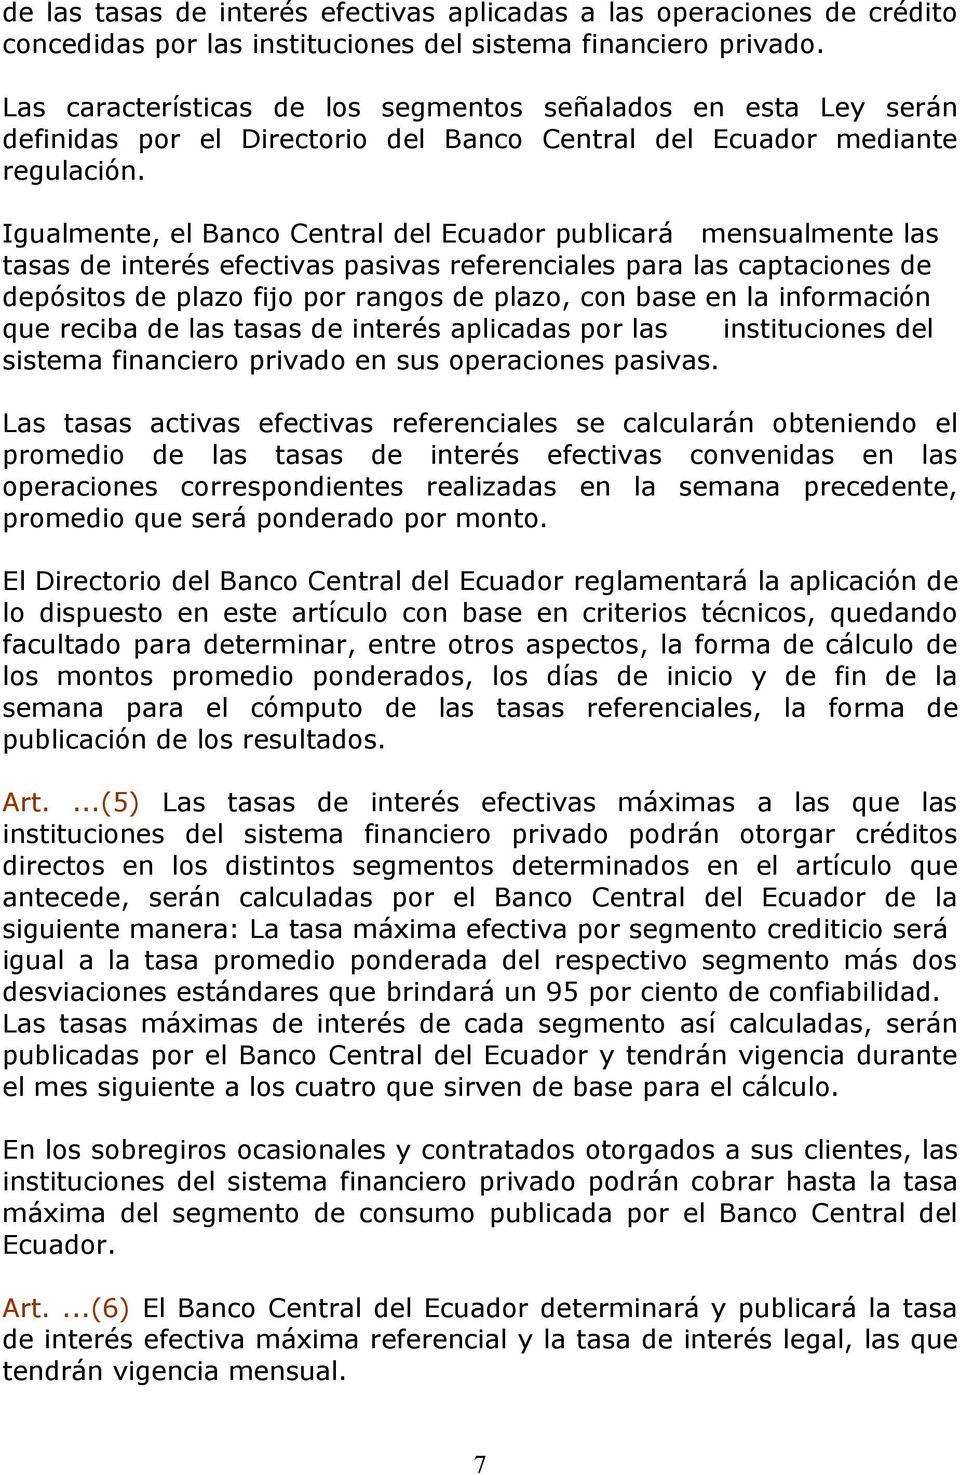 Igualmente, el Banco Central del Ecuador publicará mensualmente las tasas de interés efectivas pasivas referenciales para las captaciones de depósitos de plazo fijo por rangos de plazo, con base en